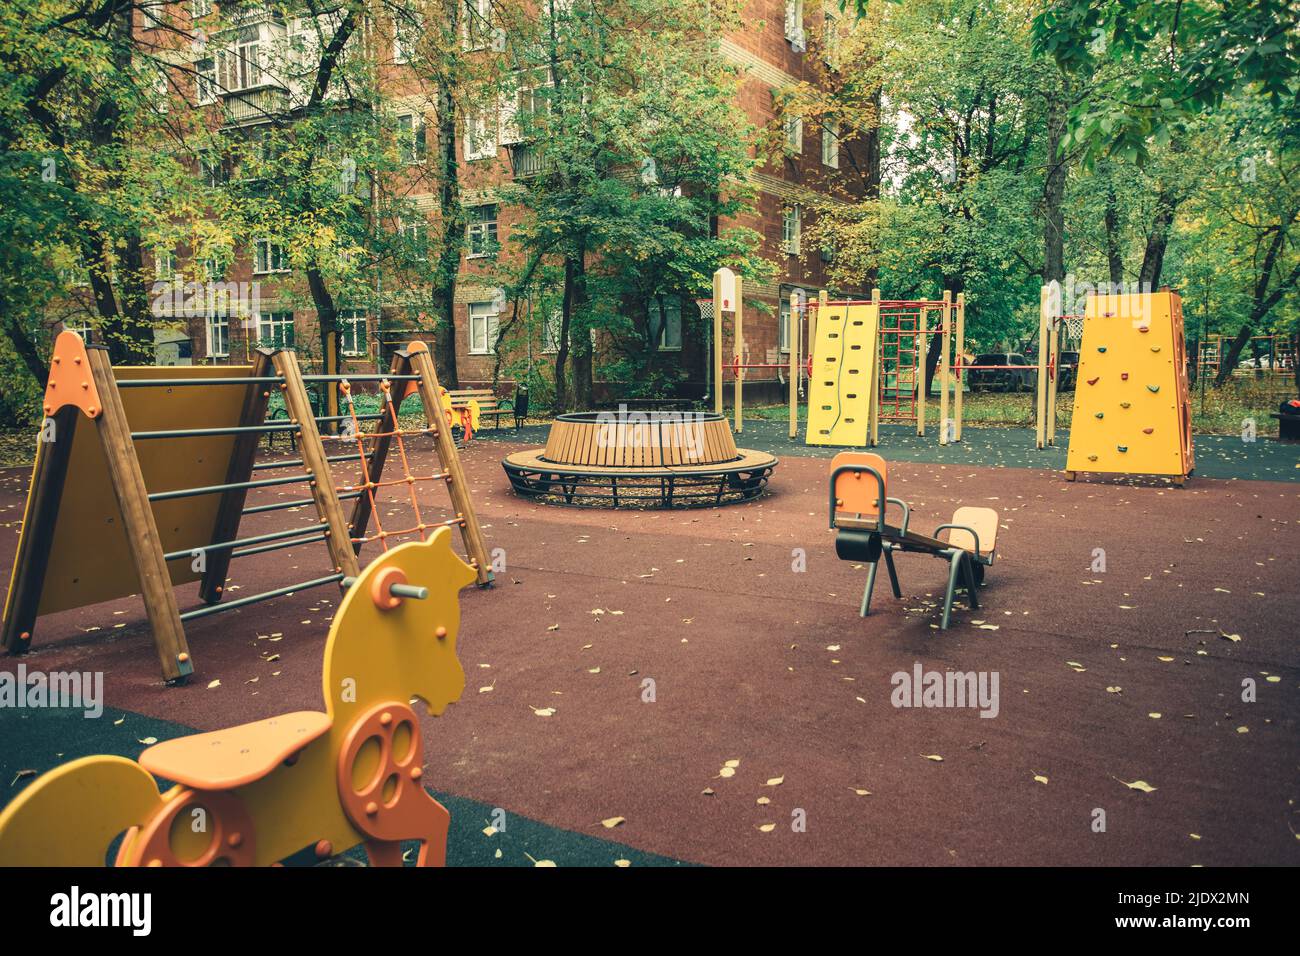 Aire de jeux pour enfants pour les jeux en plein air le jour de l'automne.Le concept de loisirs sains et de développement de l'enfant.Divertissement utile pour les enfants. Banque D'Images